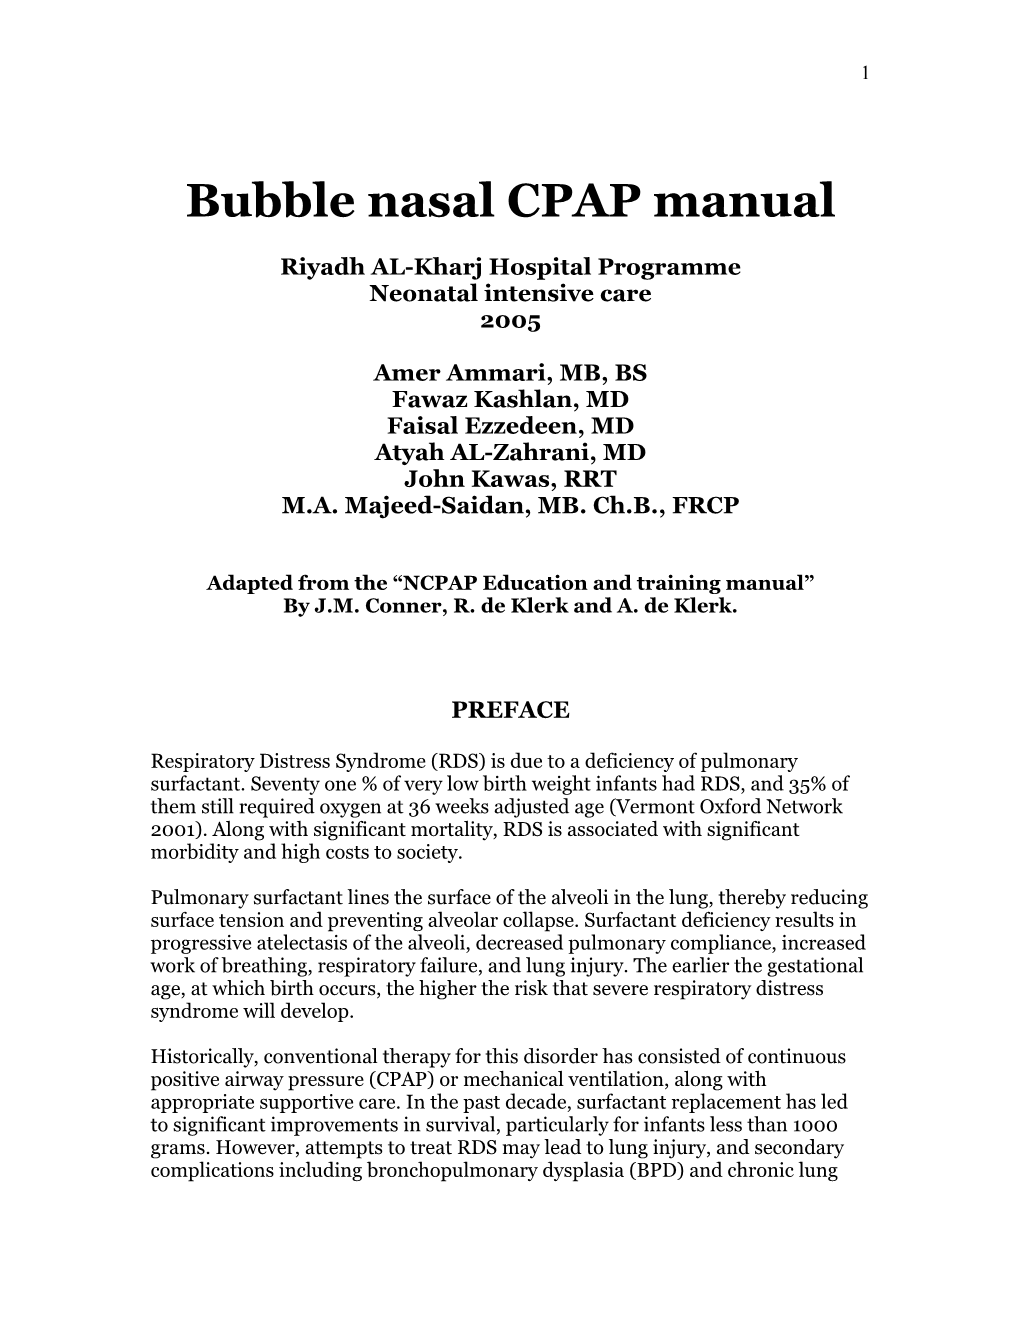 Bubble Nasal CPAP Manual